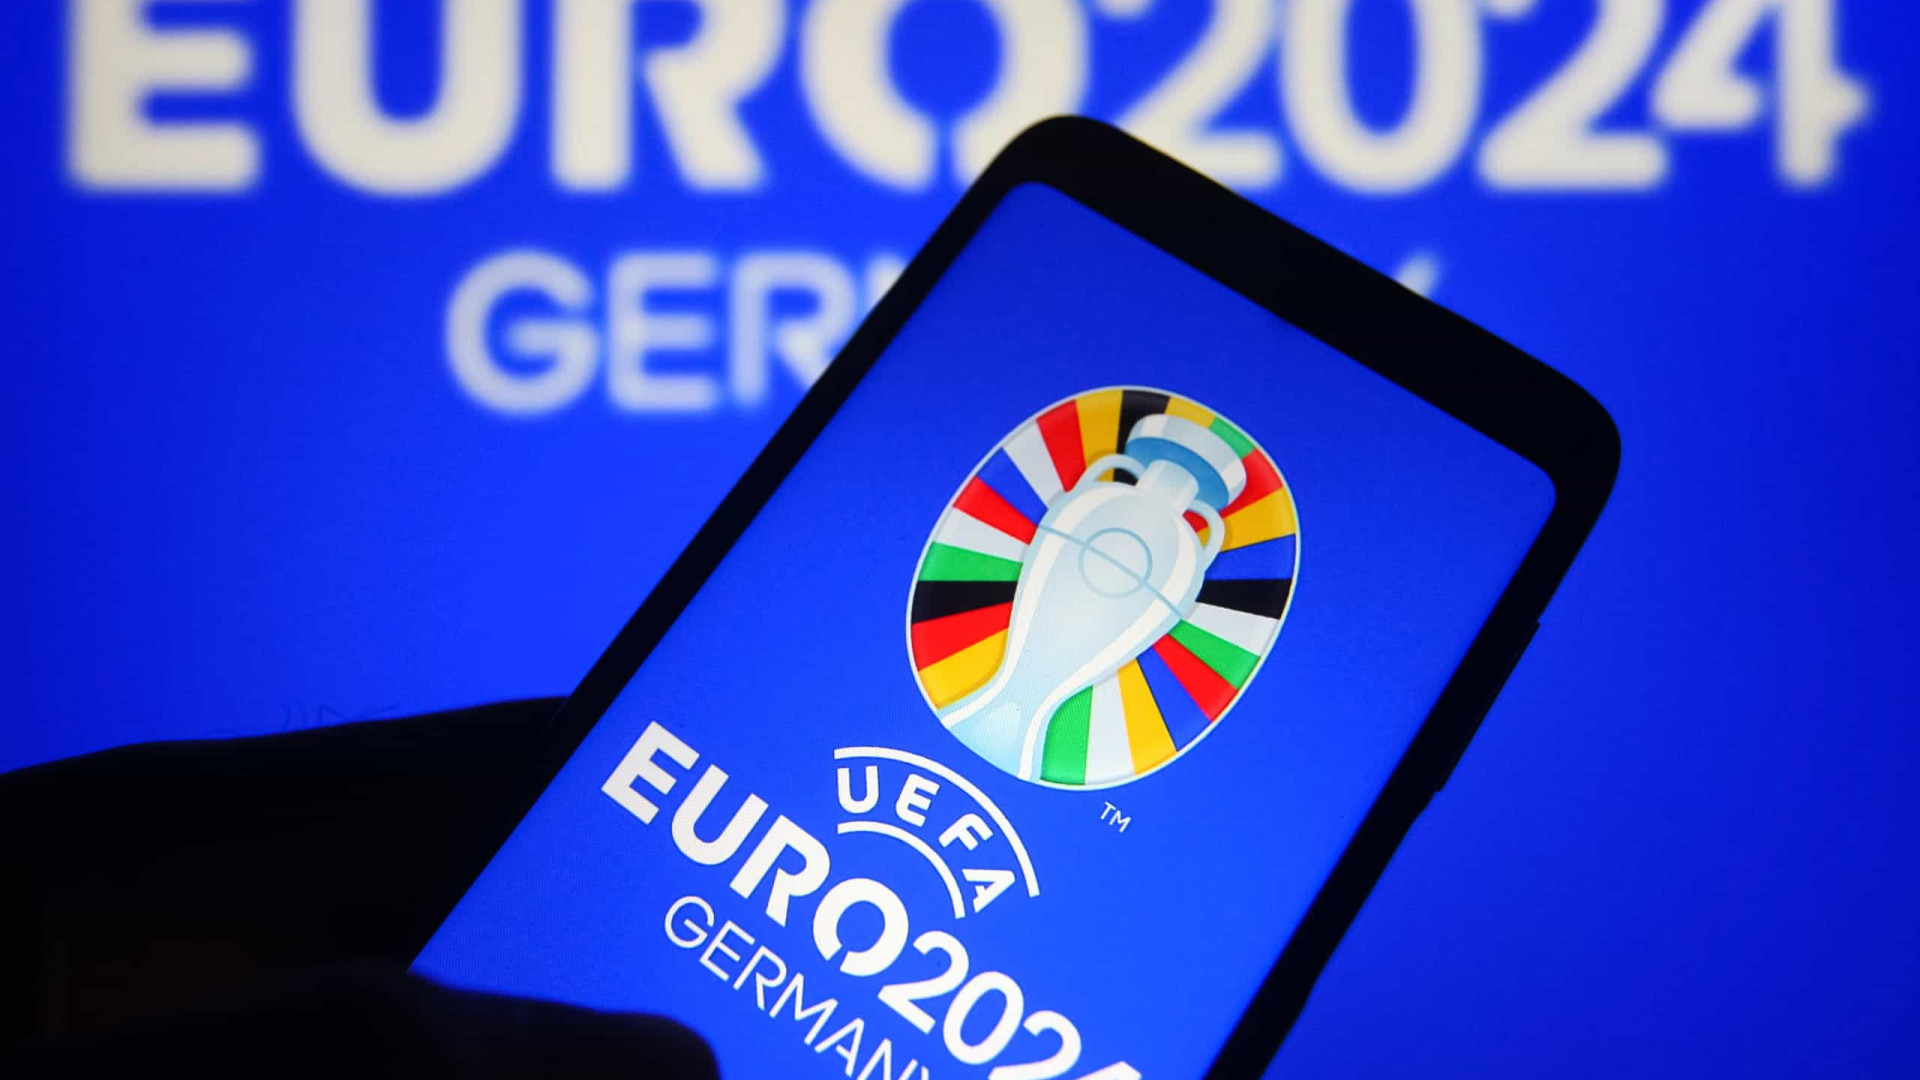 Euro'2024: Portugal, Alemanha e França já qualificados